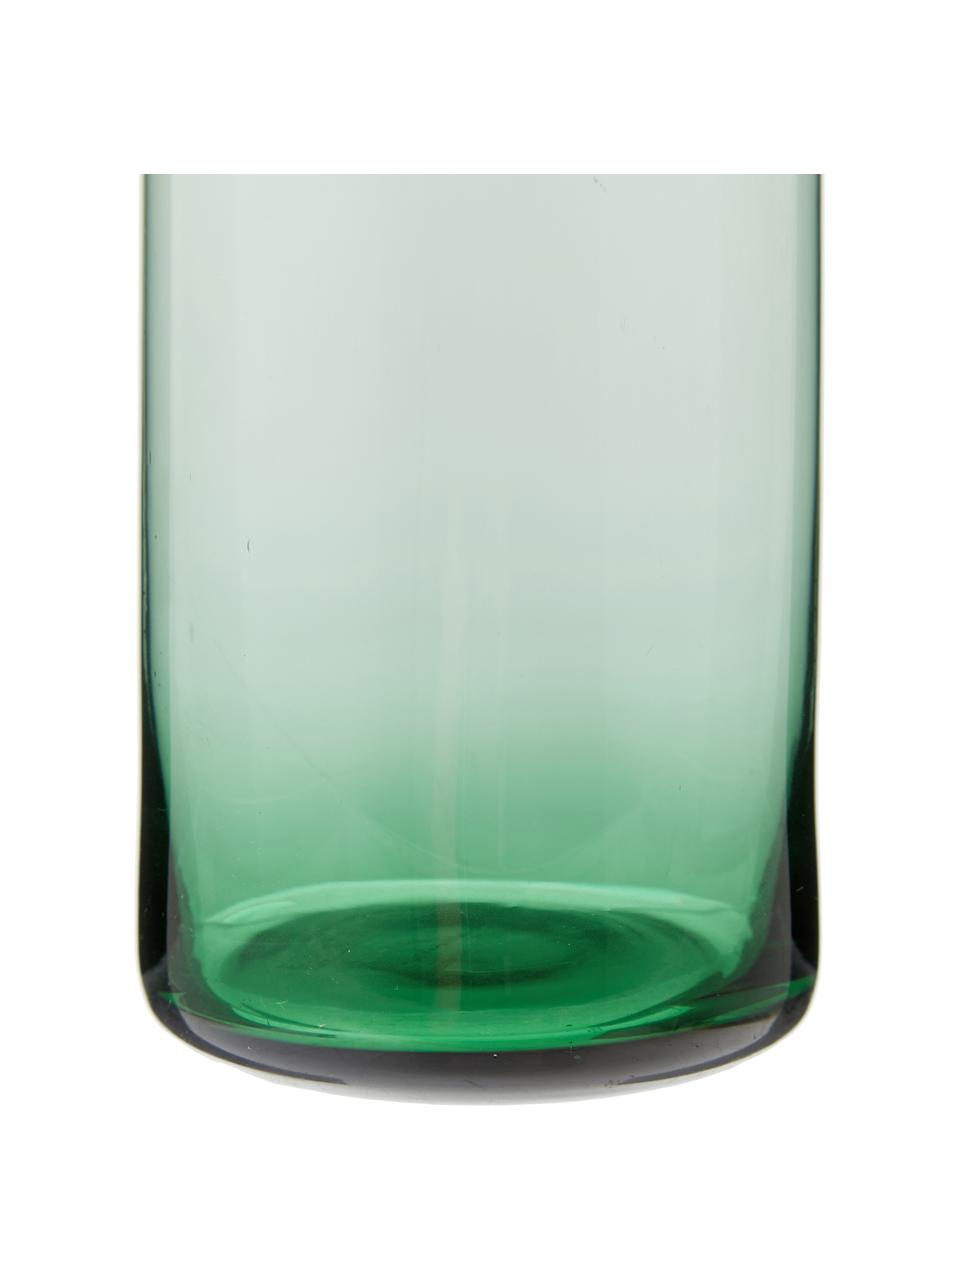 Glaskaraffe Clearance in Grün mit Korkdeckel, 1 L, Deckel: Kork, Grün, transparent, H 25 cm, 1 L